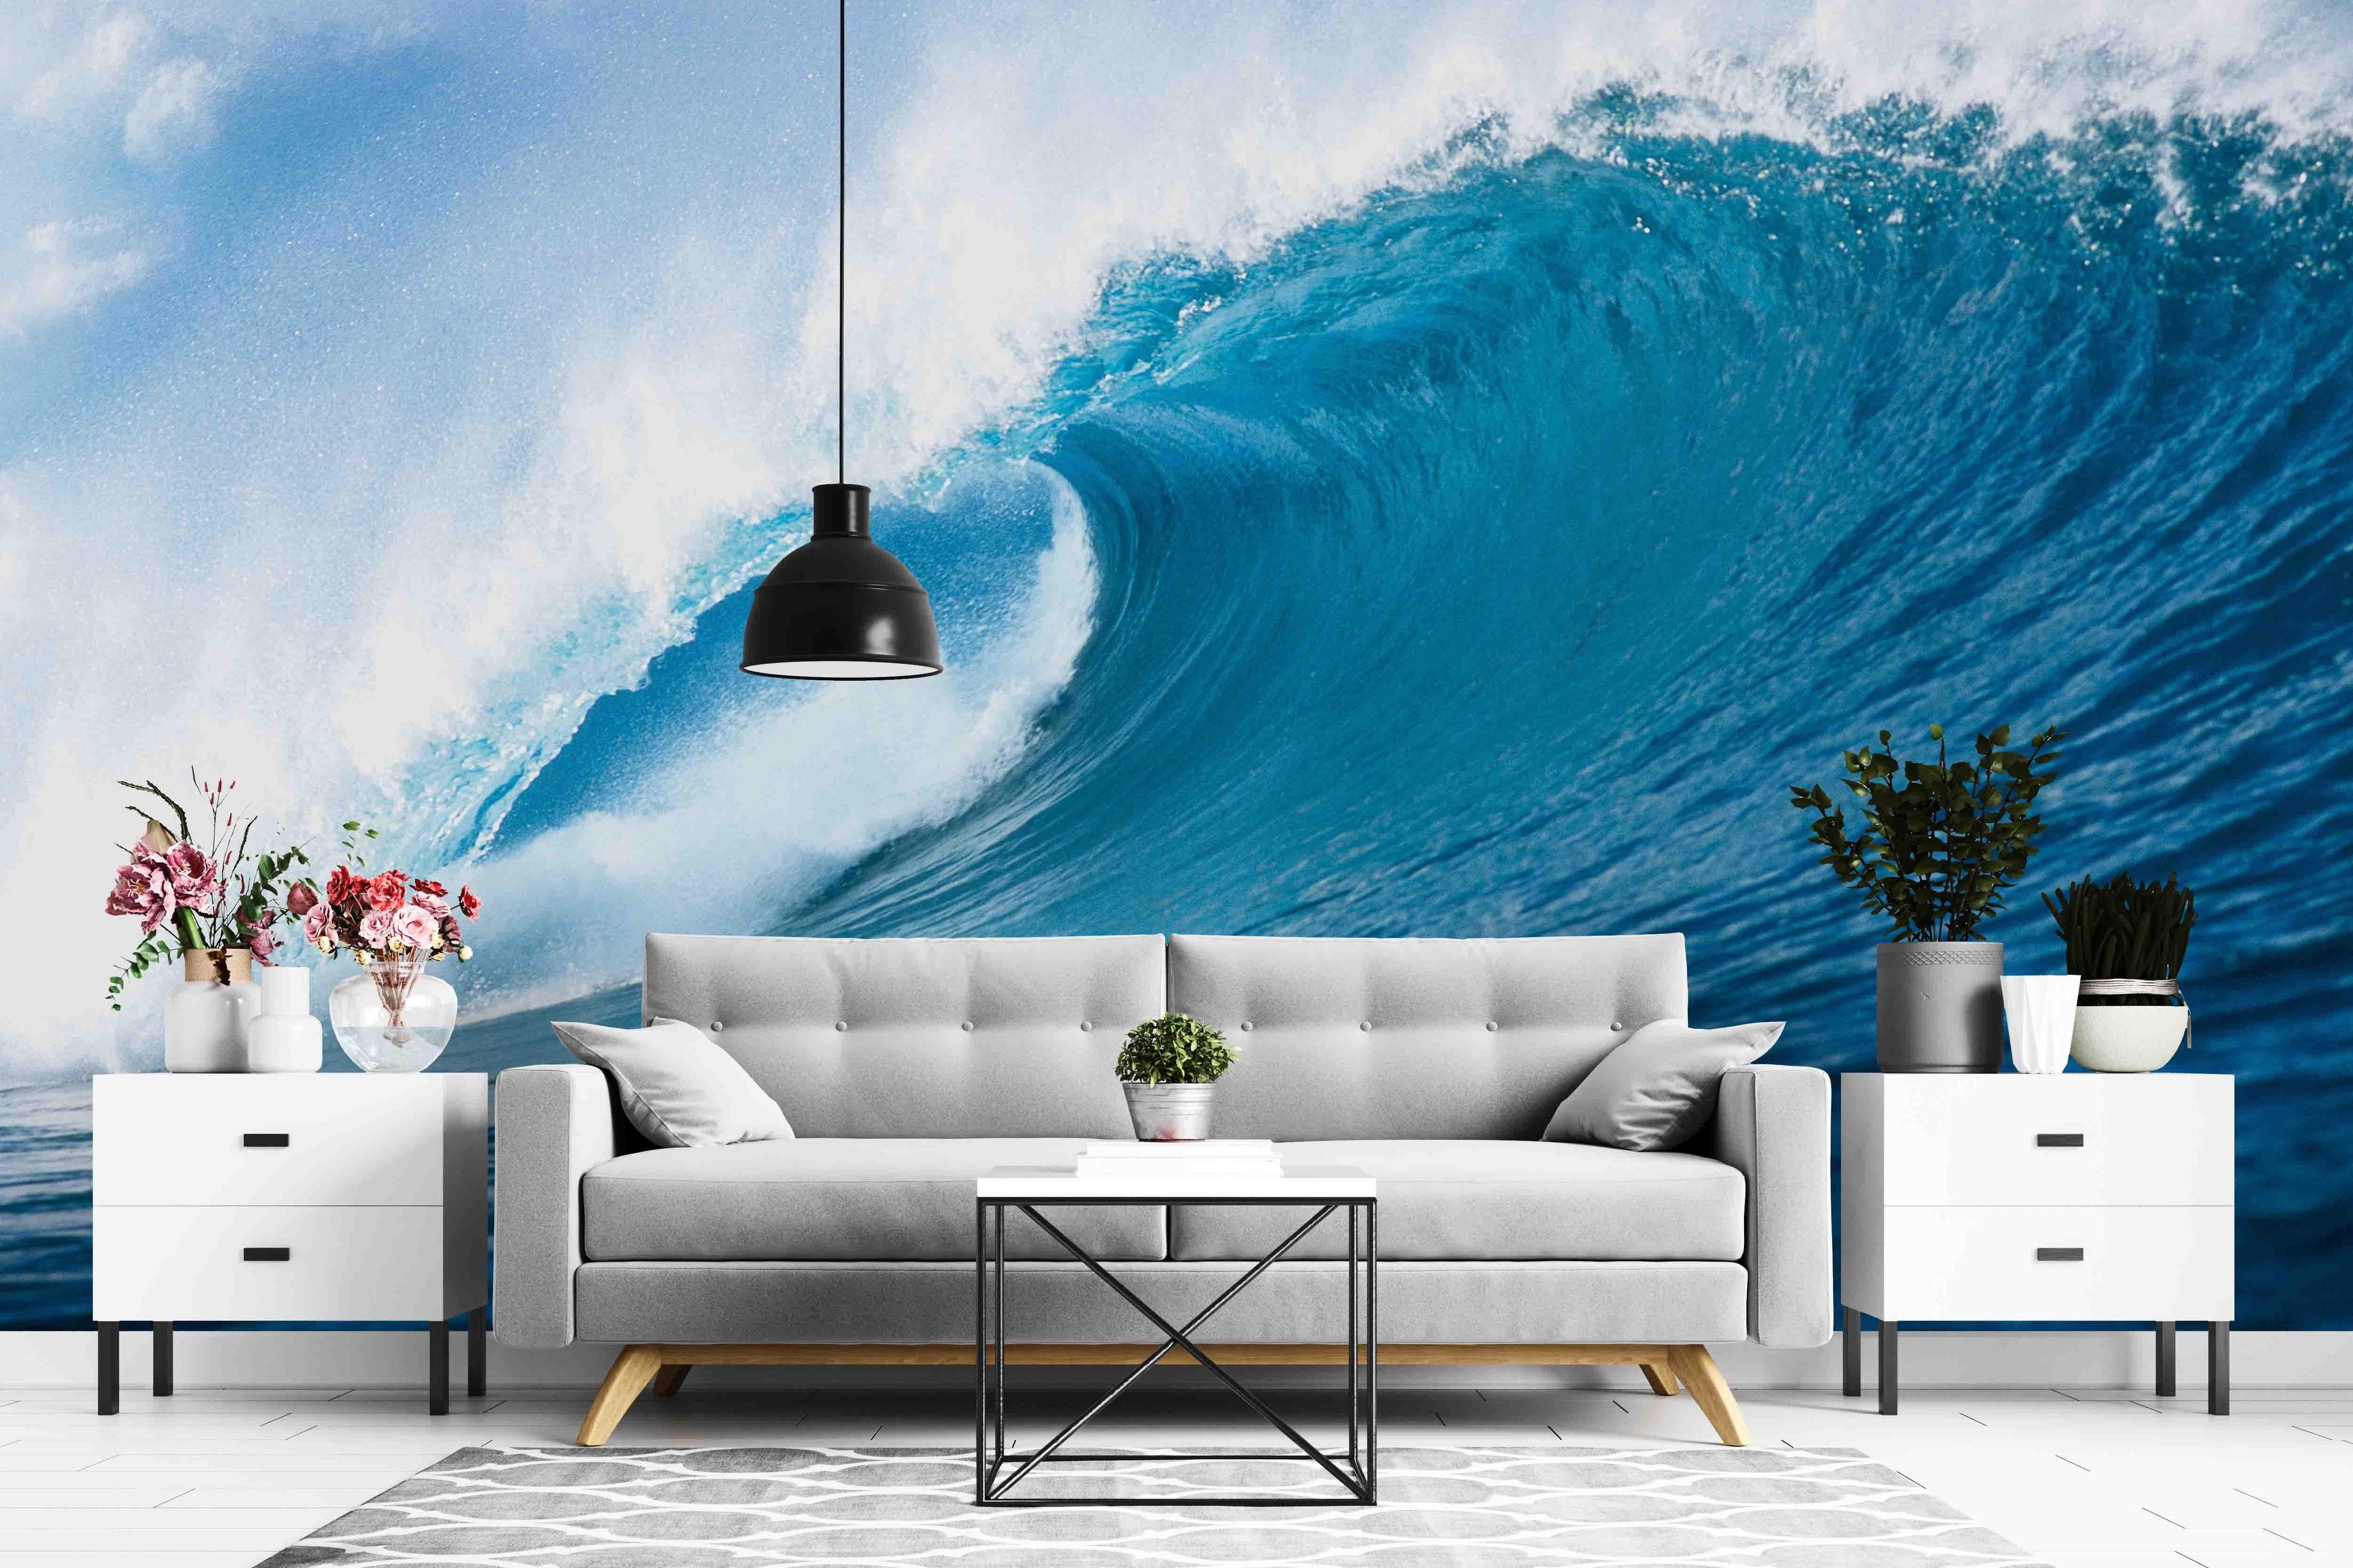 3D Blue Sea Waves Wall Mural Wallpaper ZY D53- Jess Art Decoration